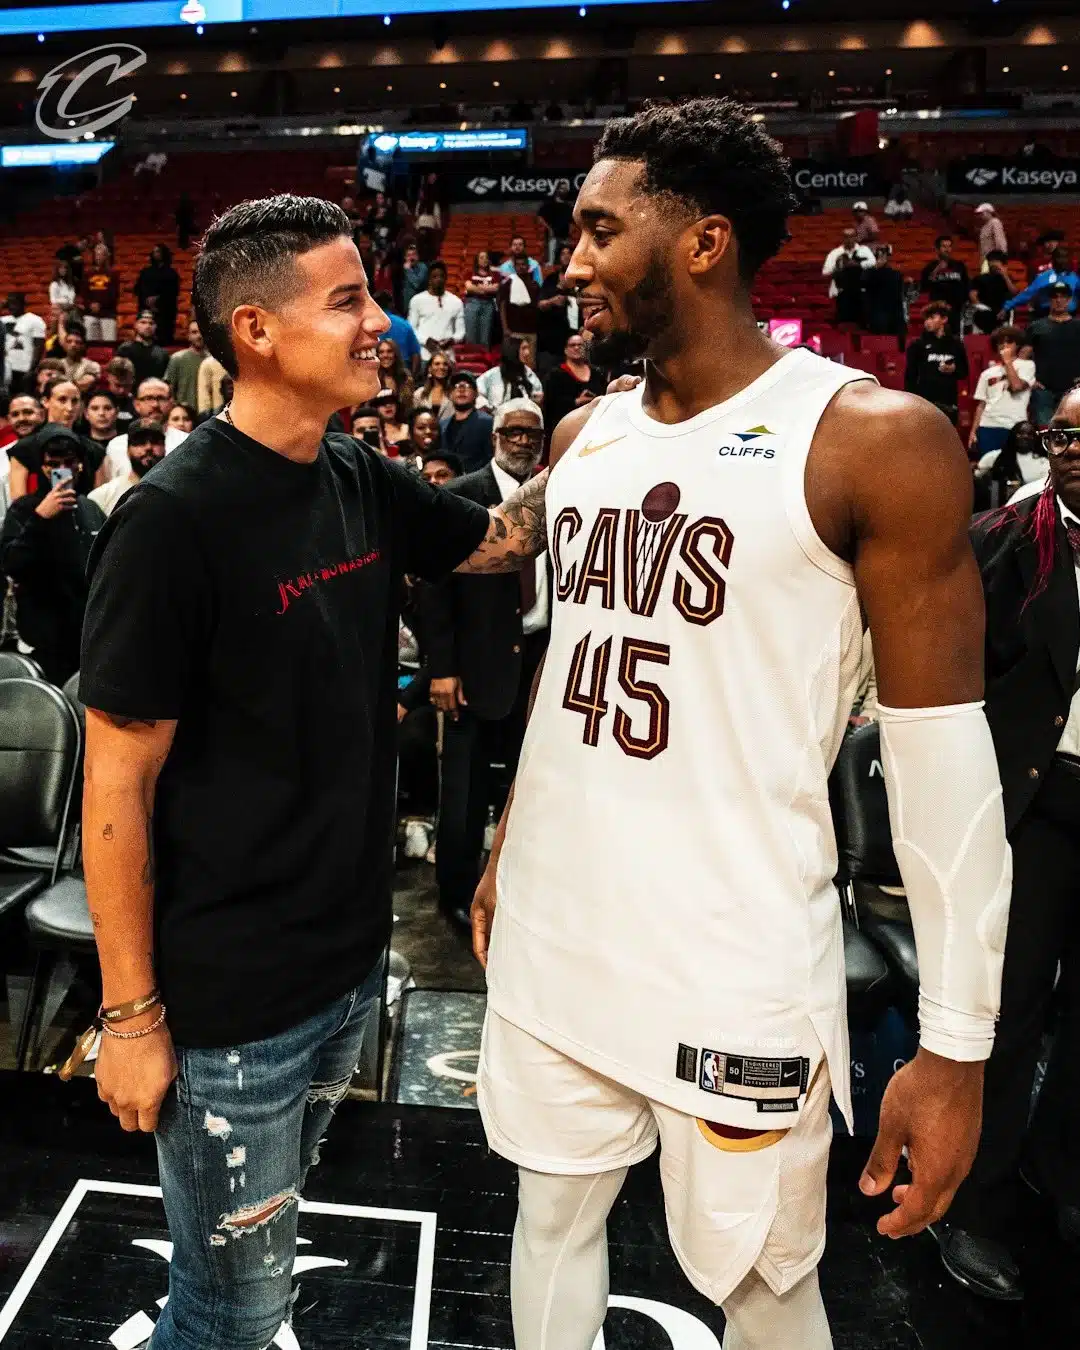 James Rodríguez e astros da NBA se encontram em jogo nos EUA. O jogo entre Miami Heat e Cleveland Cavaliers contou com a presença de um convidado de honra muito especial.